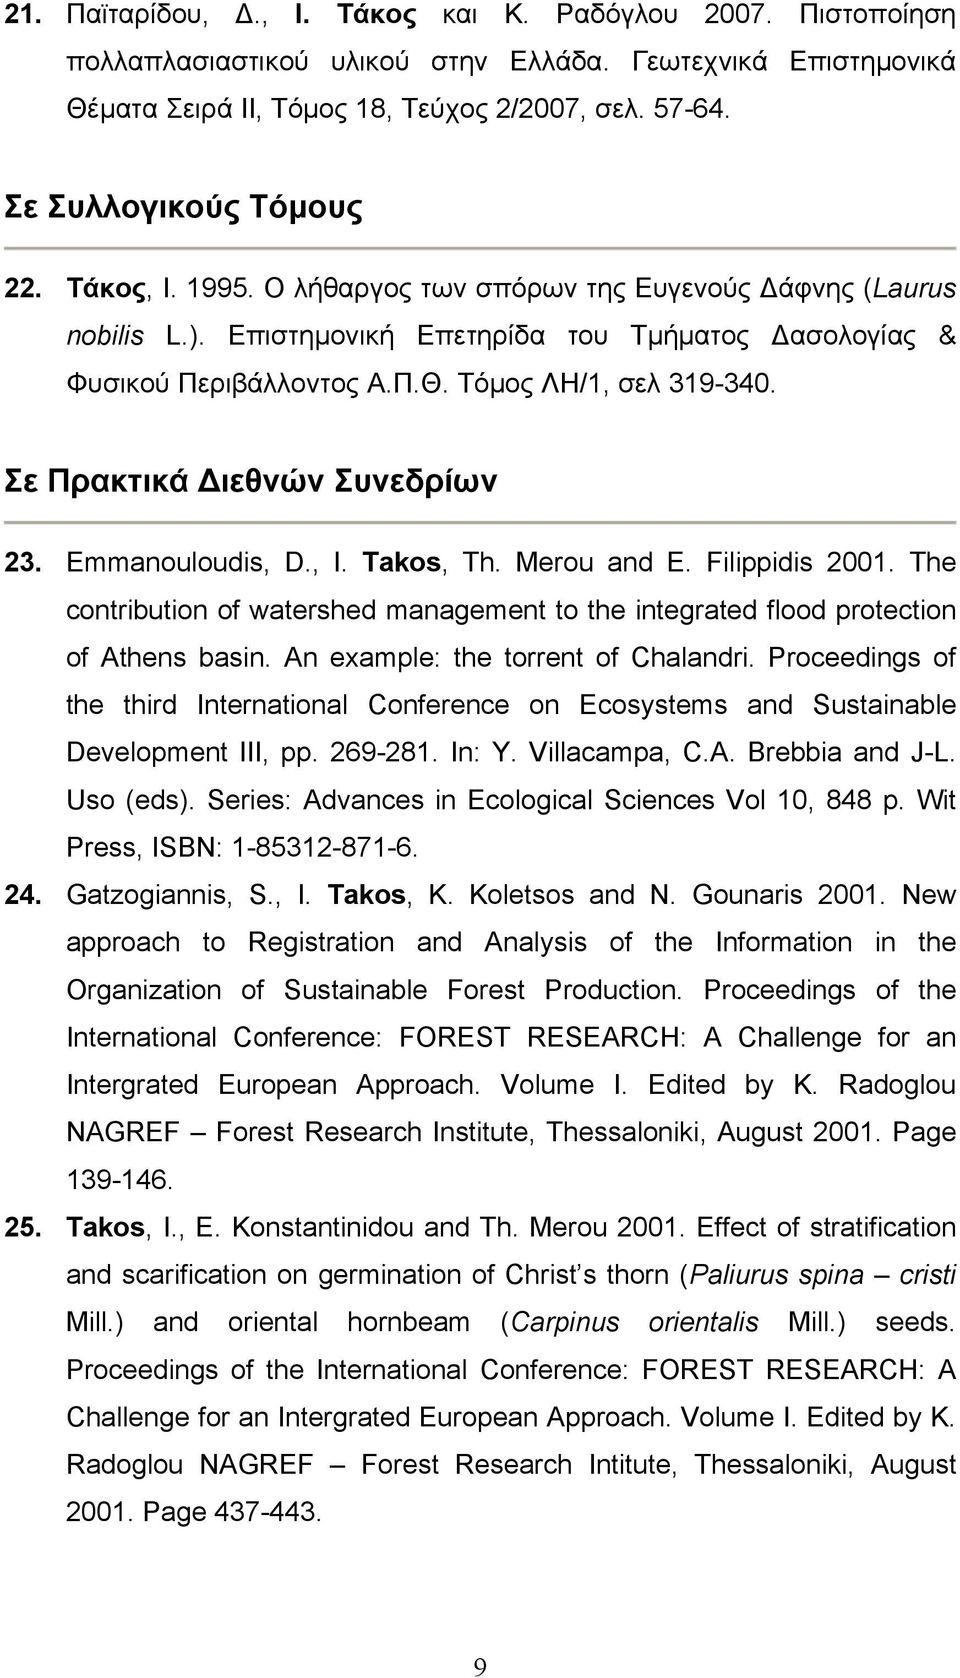 Τόμος ΛΗ/1, σελ 319-340. Σε Πρακτικά Διεθνών Συνεδρίων 23. Emmanouloudis, D., I. Takos, Th. Merou and E. Filippidis 2001.